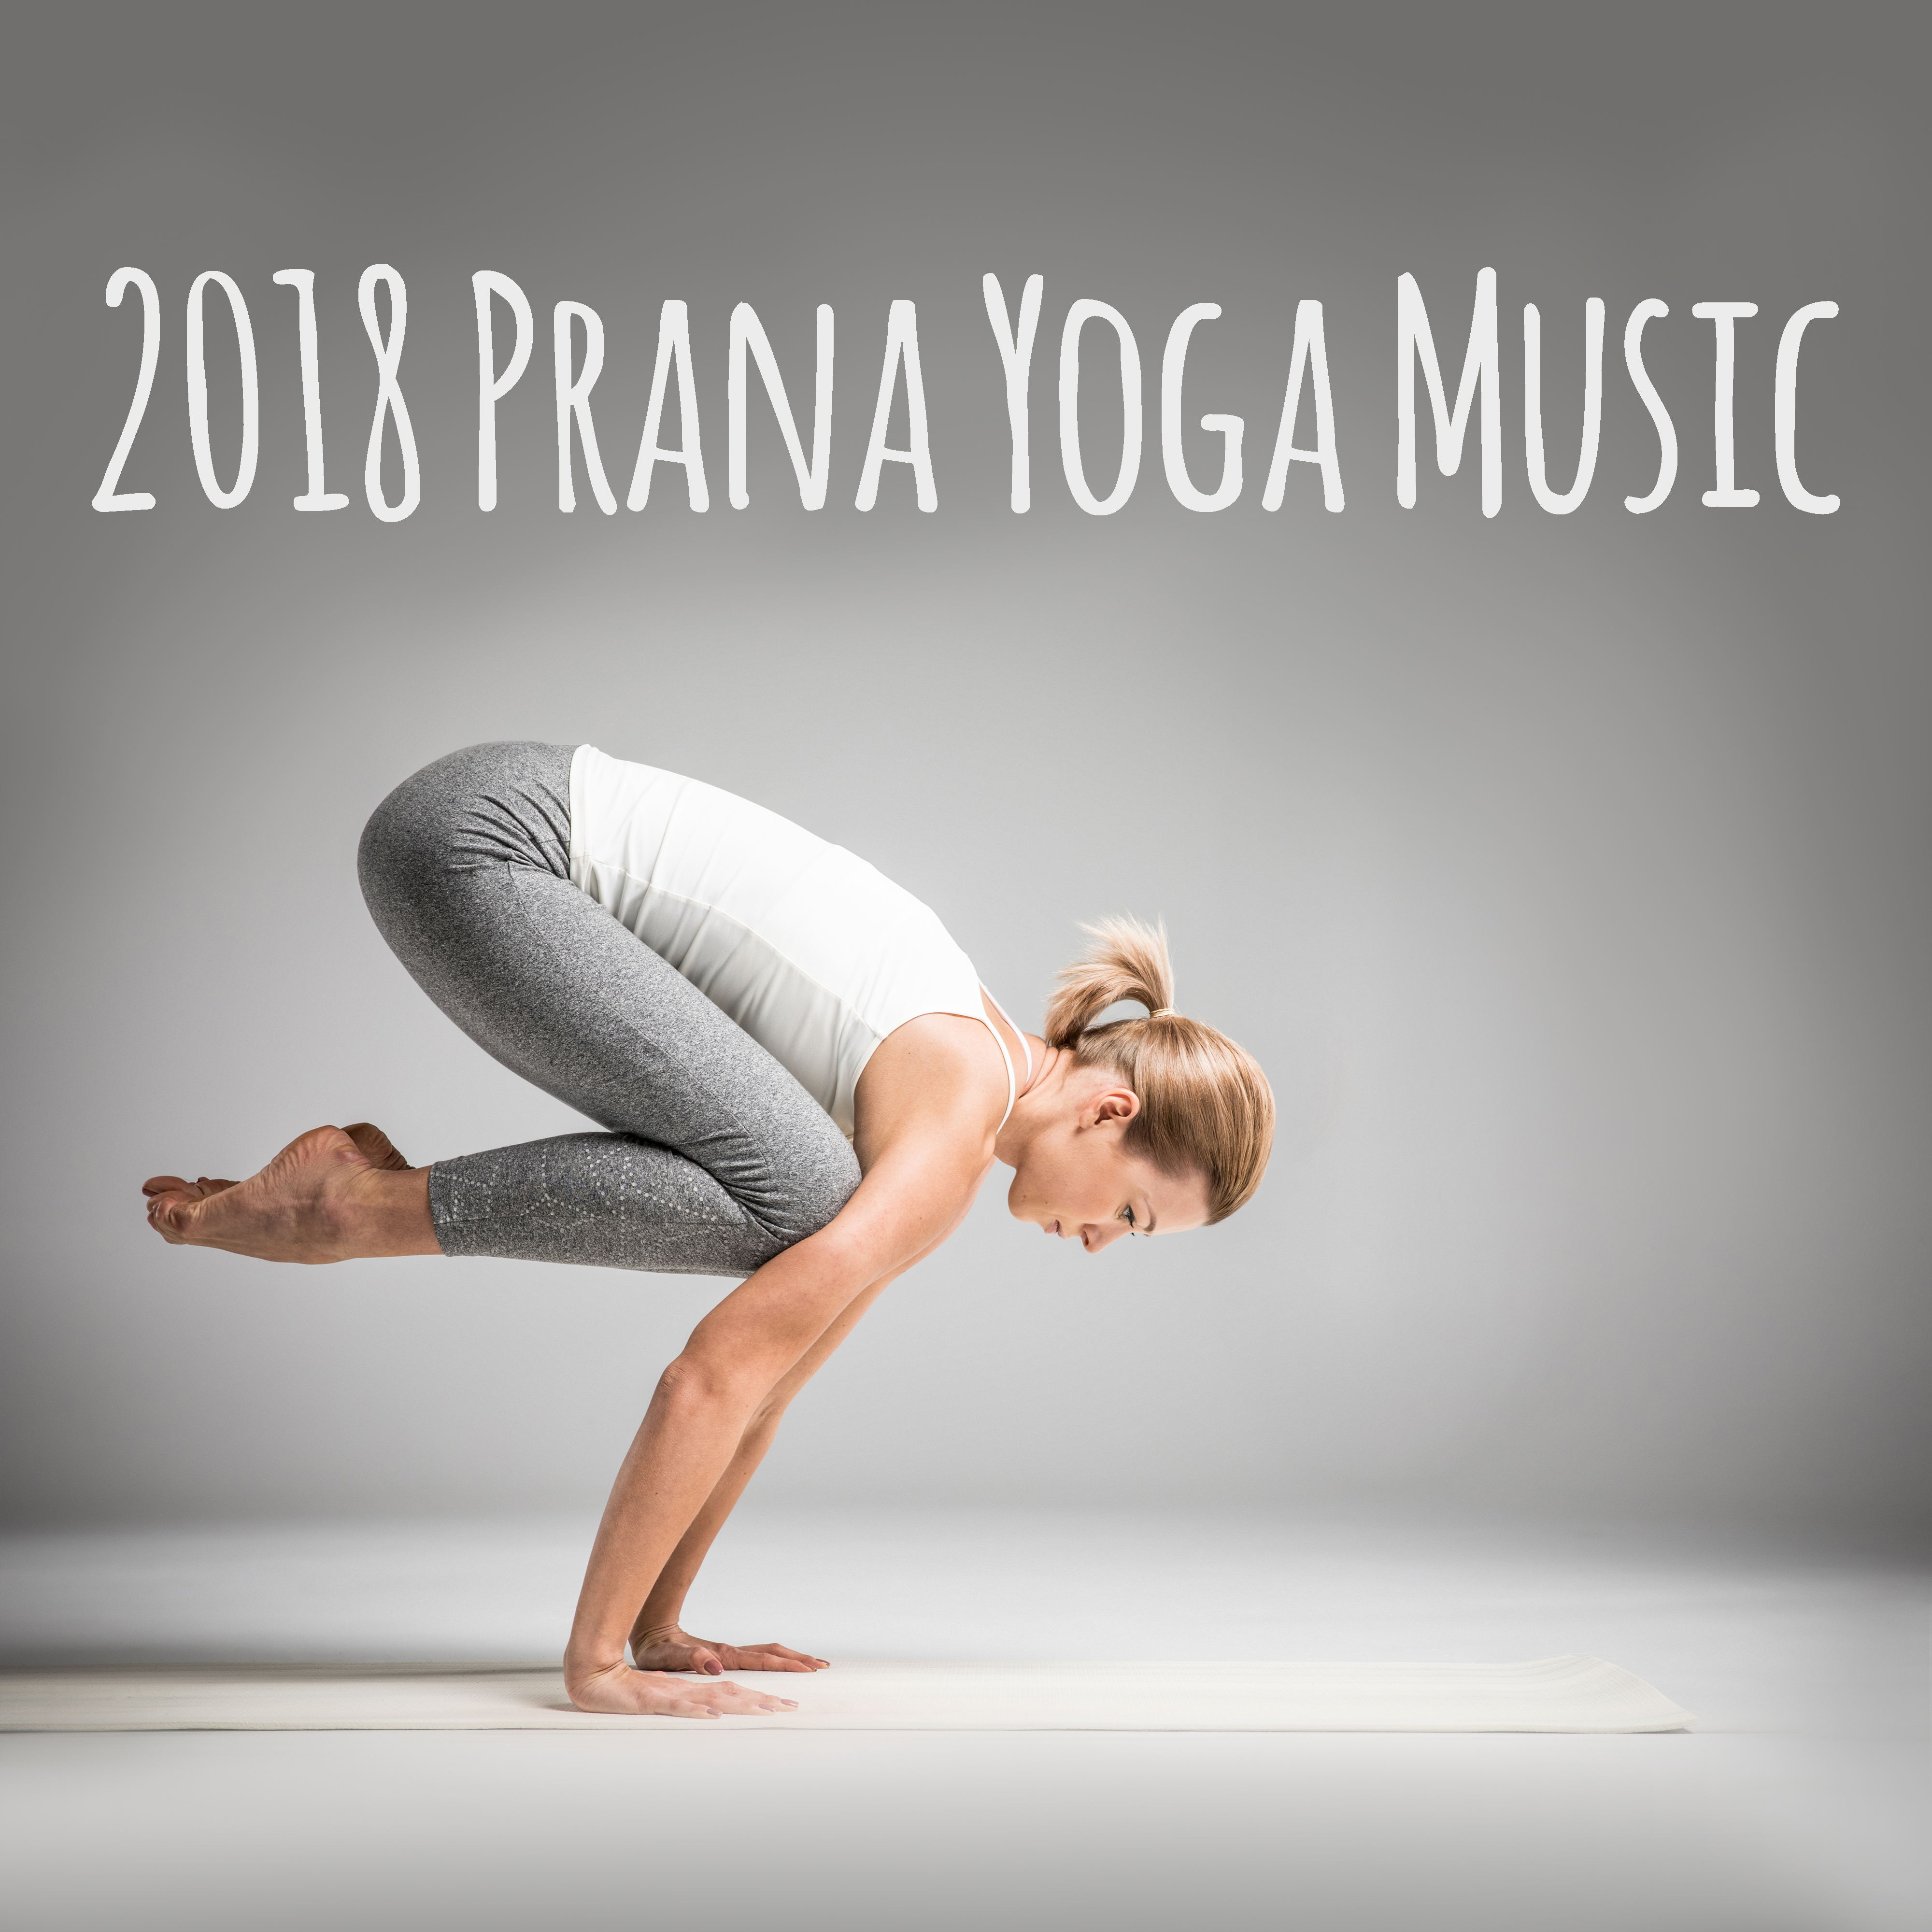 2018 Prana Yoga Music